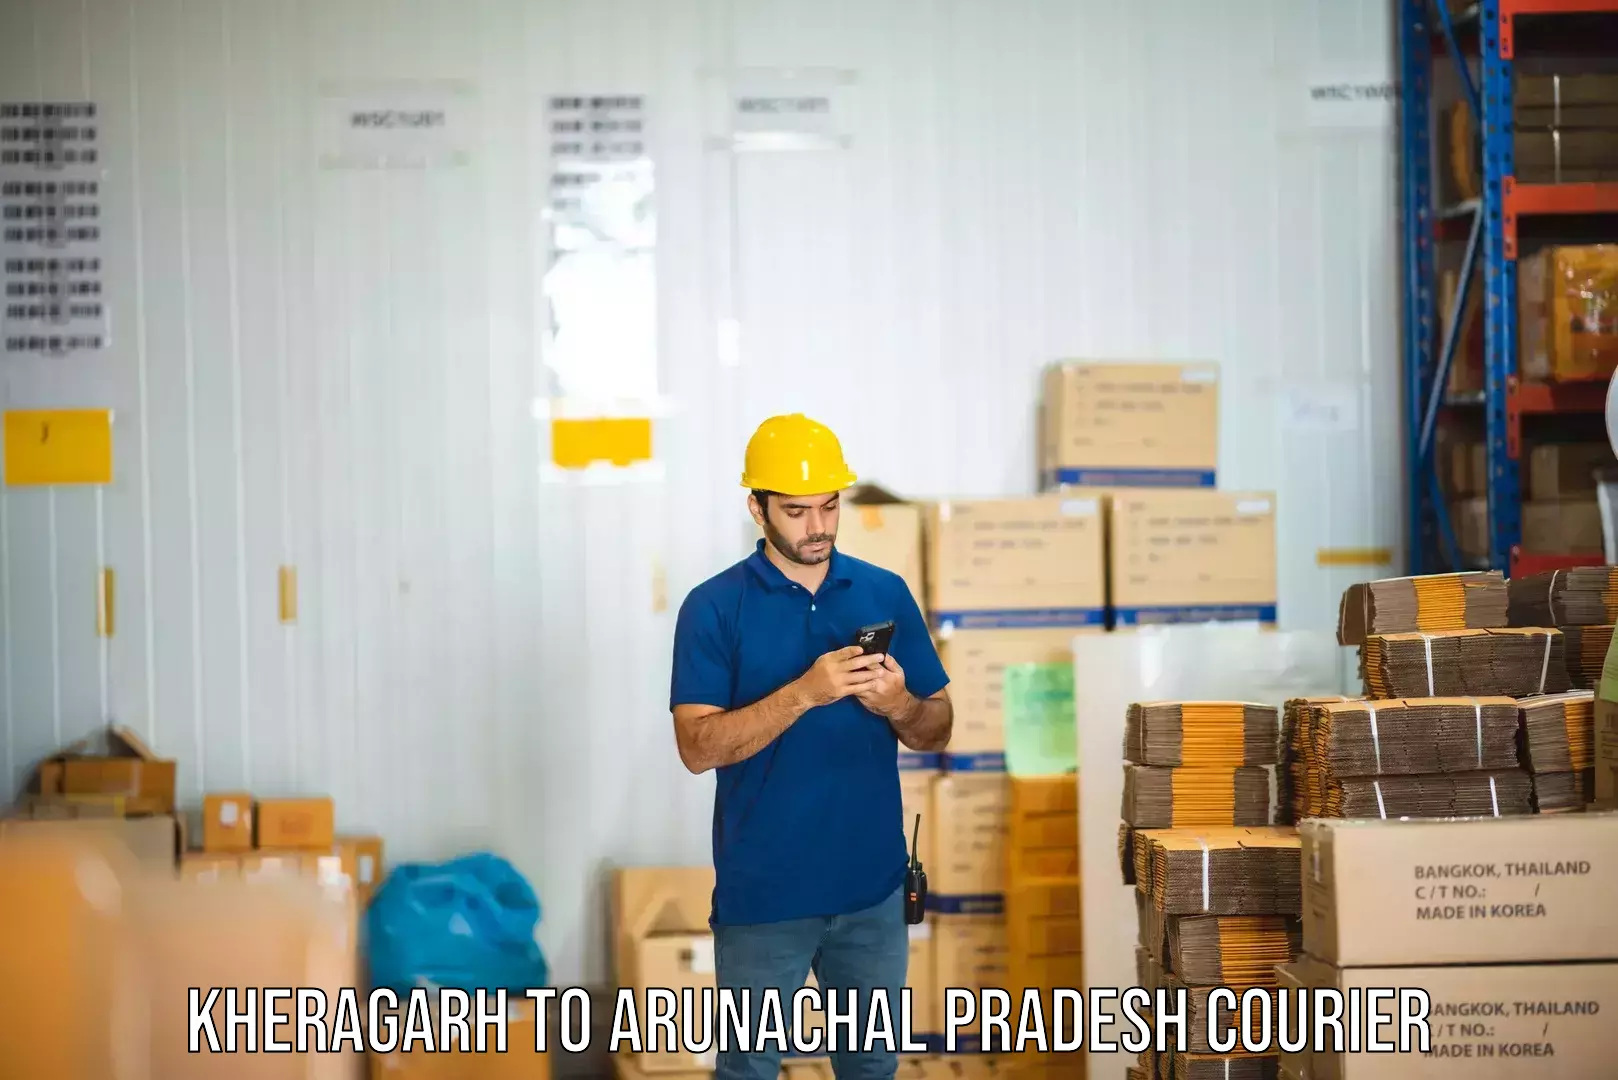 Business delivery service Kheragarh to Arunachal Pradesh